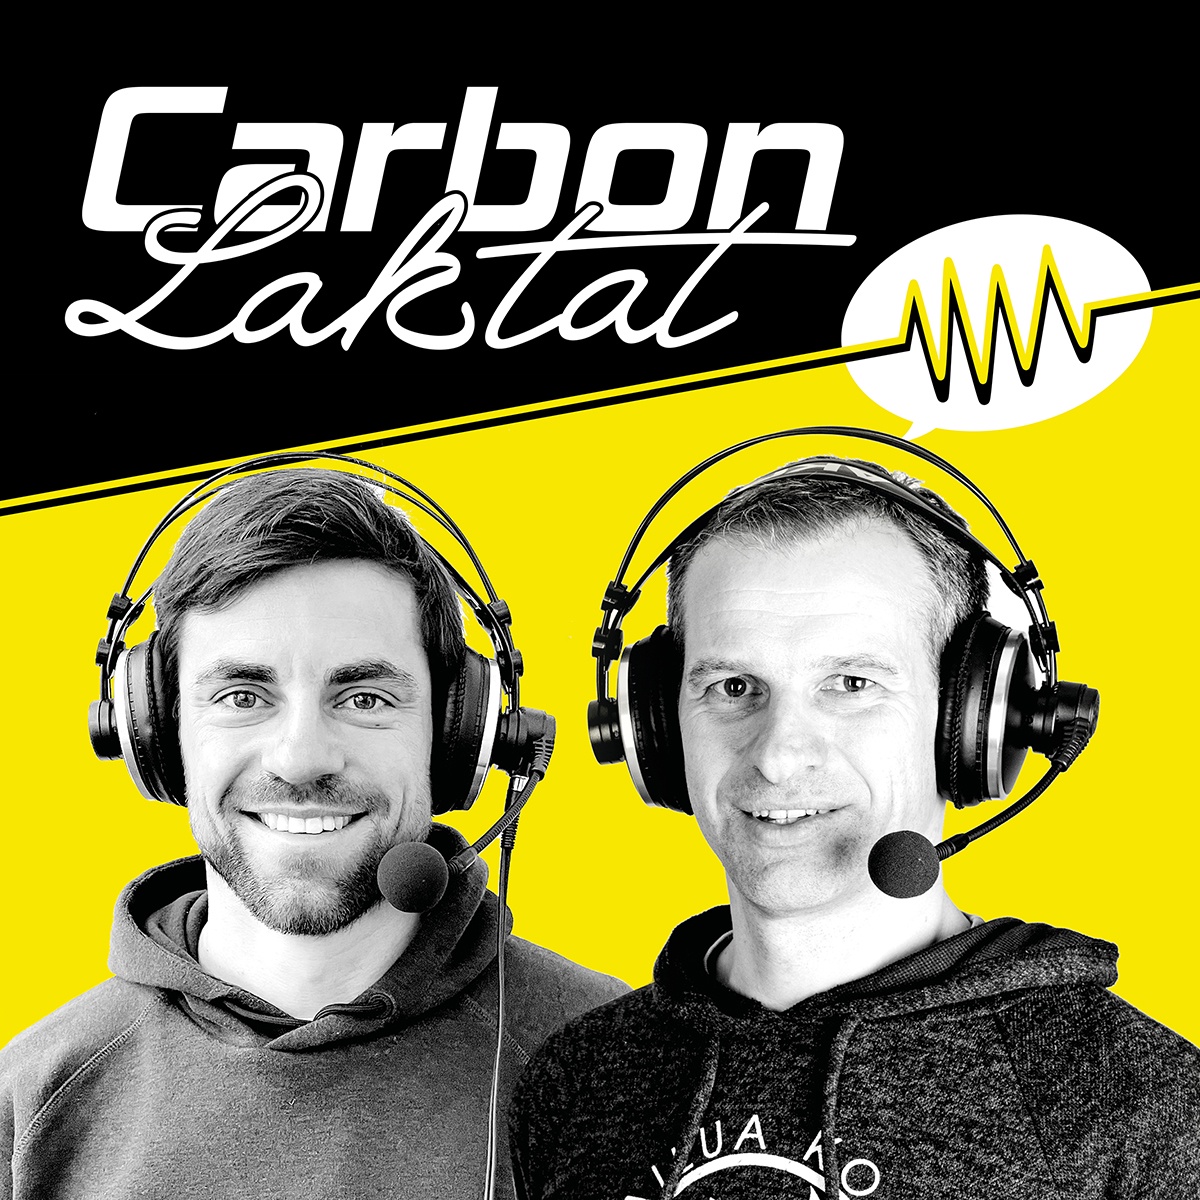 Carbon & Laktat: Ironman im TV – mit Tom Hanks und Werbung fürs triathlon-Abo